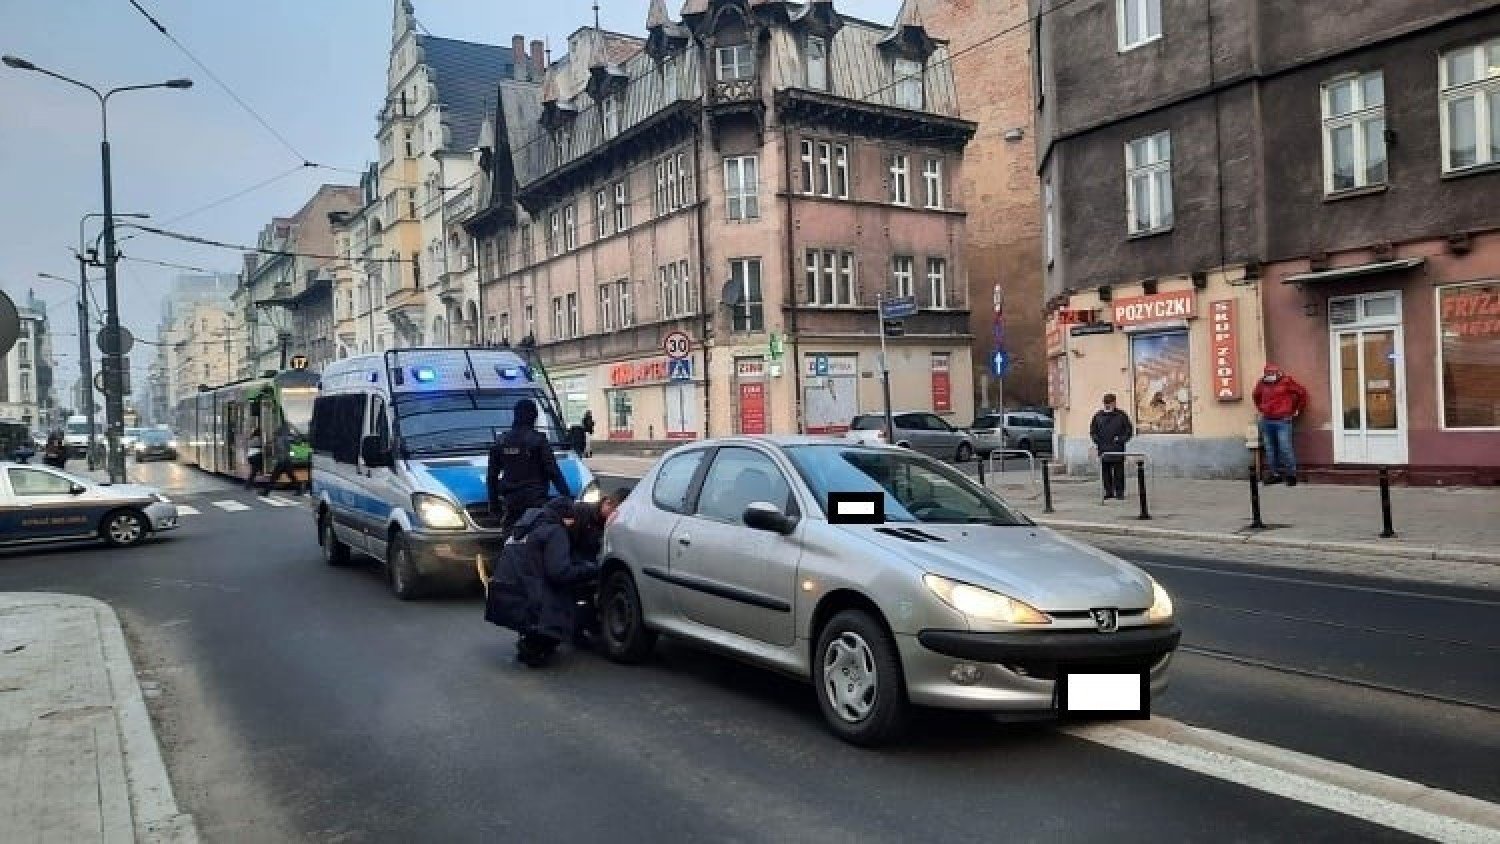 Samochód spadł z przystanku wiedeńskiego w Poznaniu i